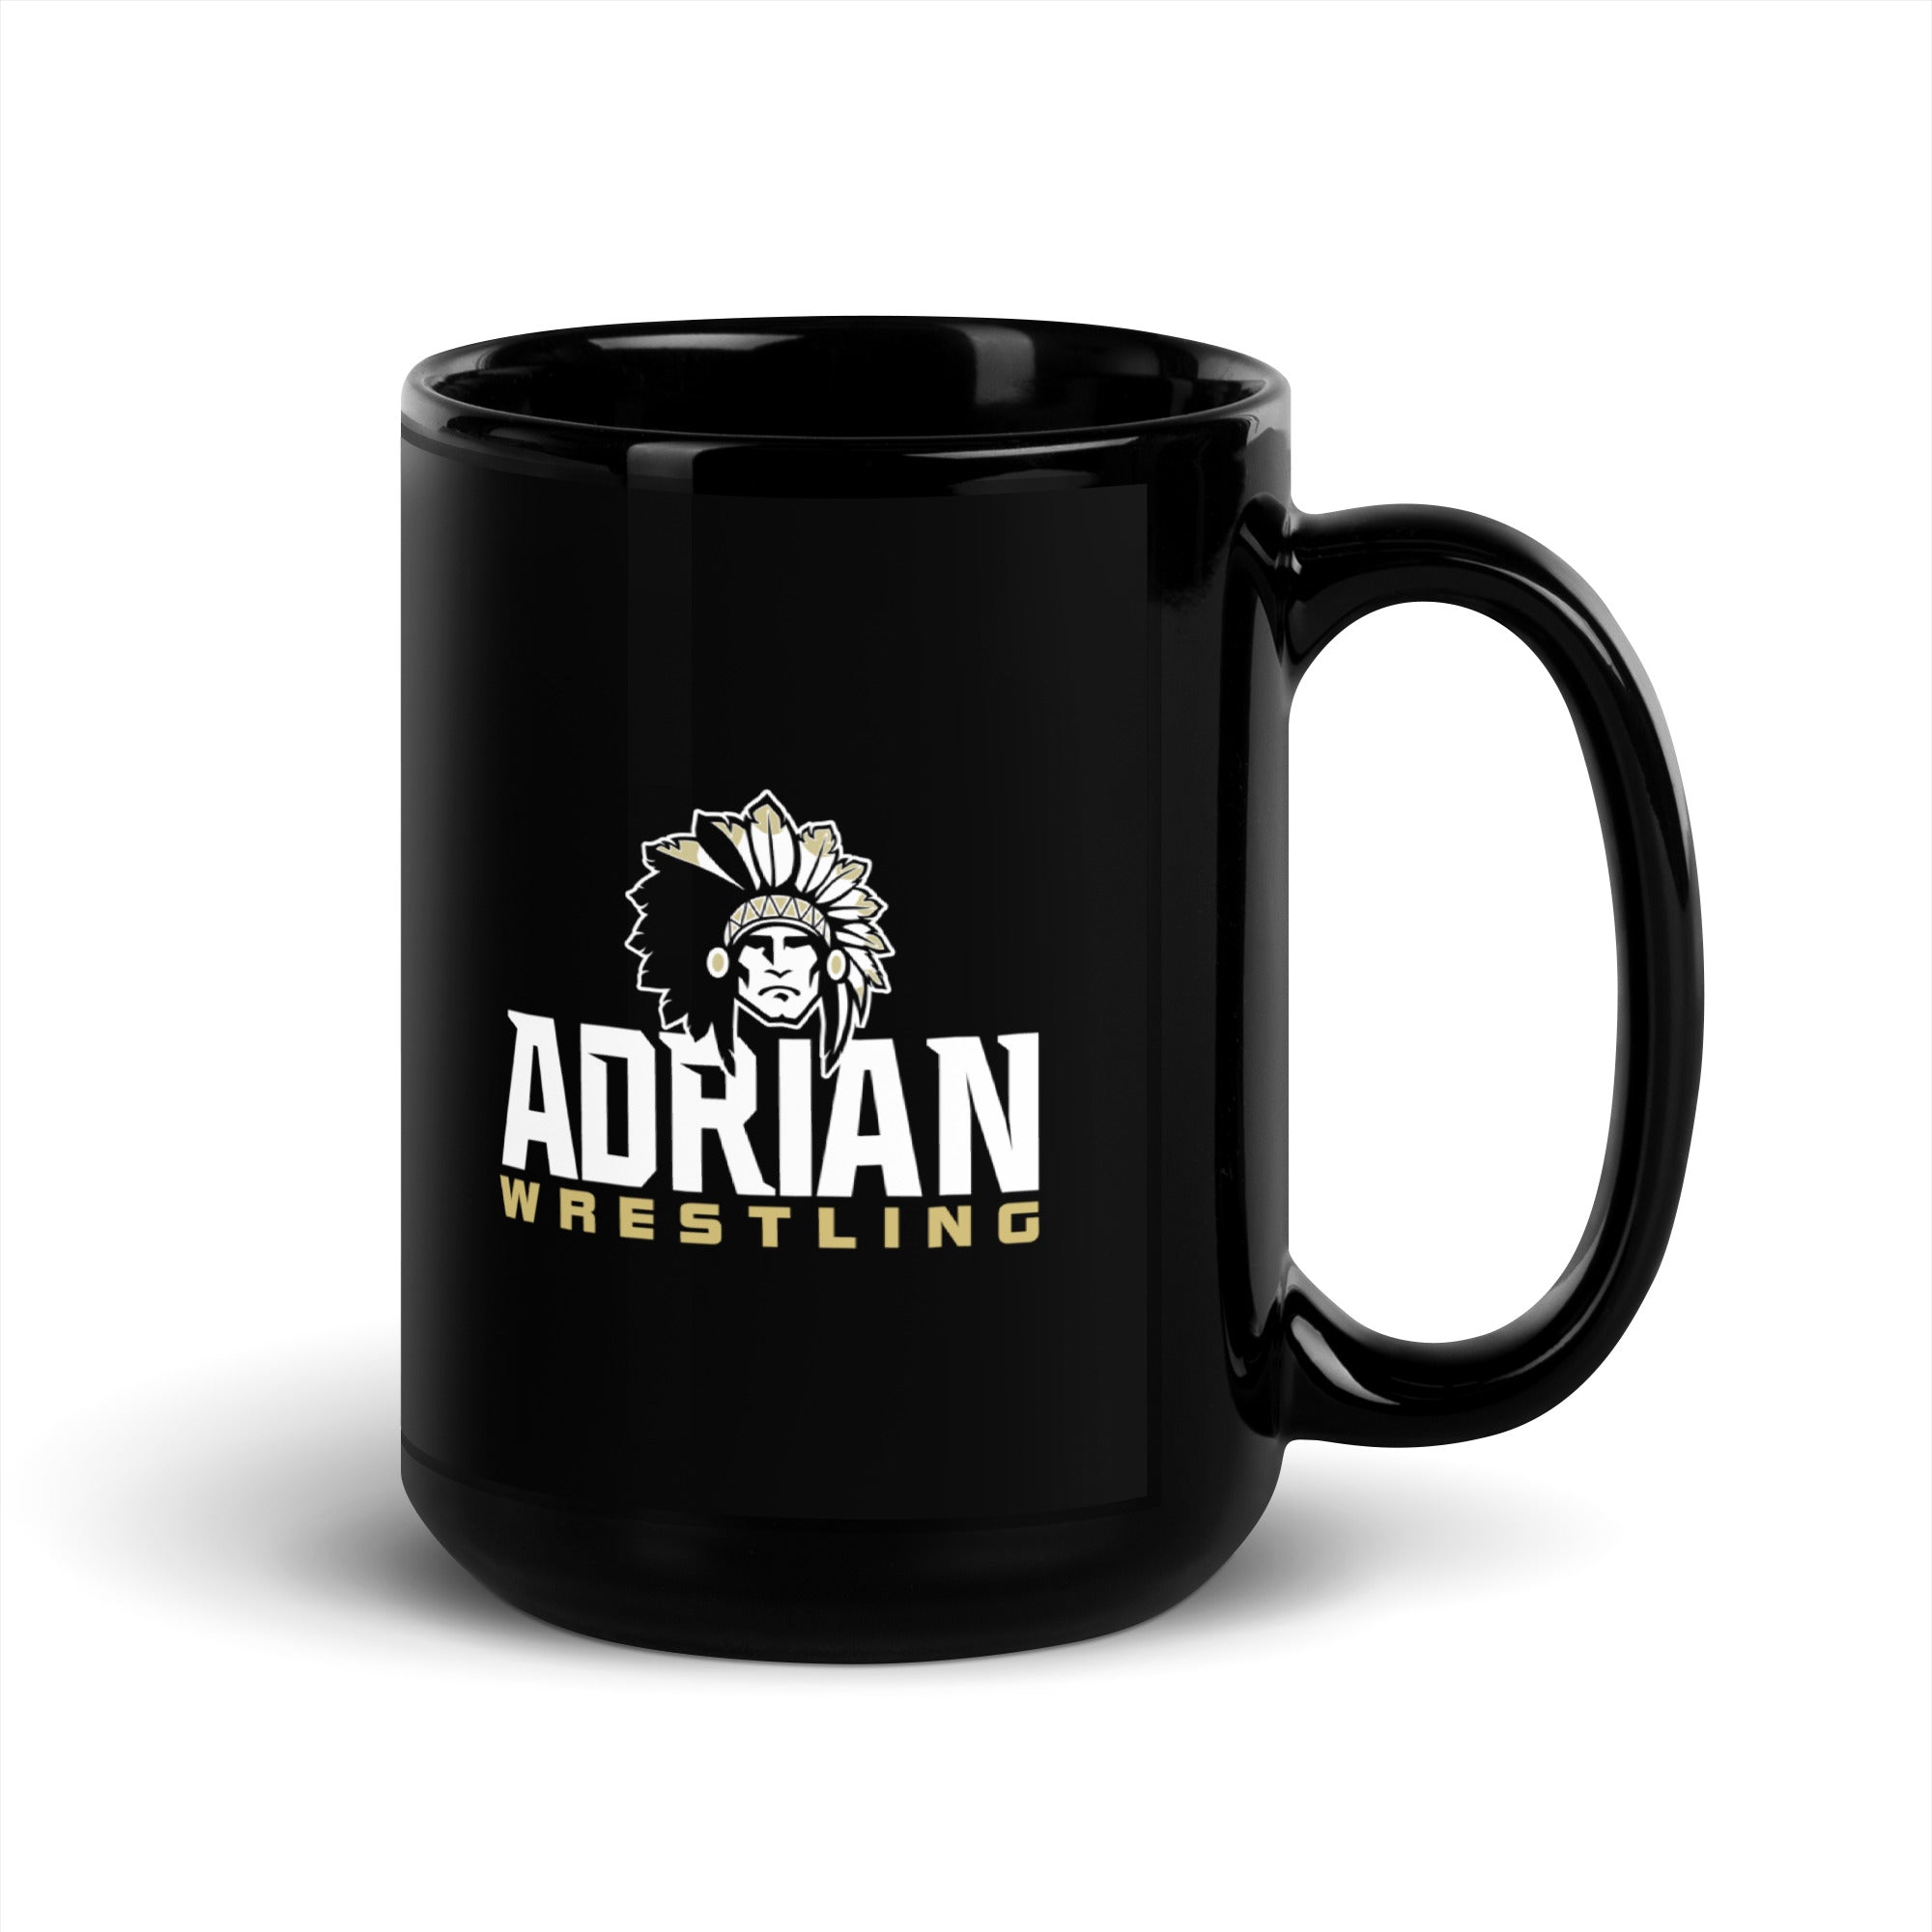 Adrian Wrestling Black Glossy Mug